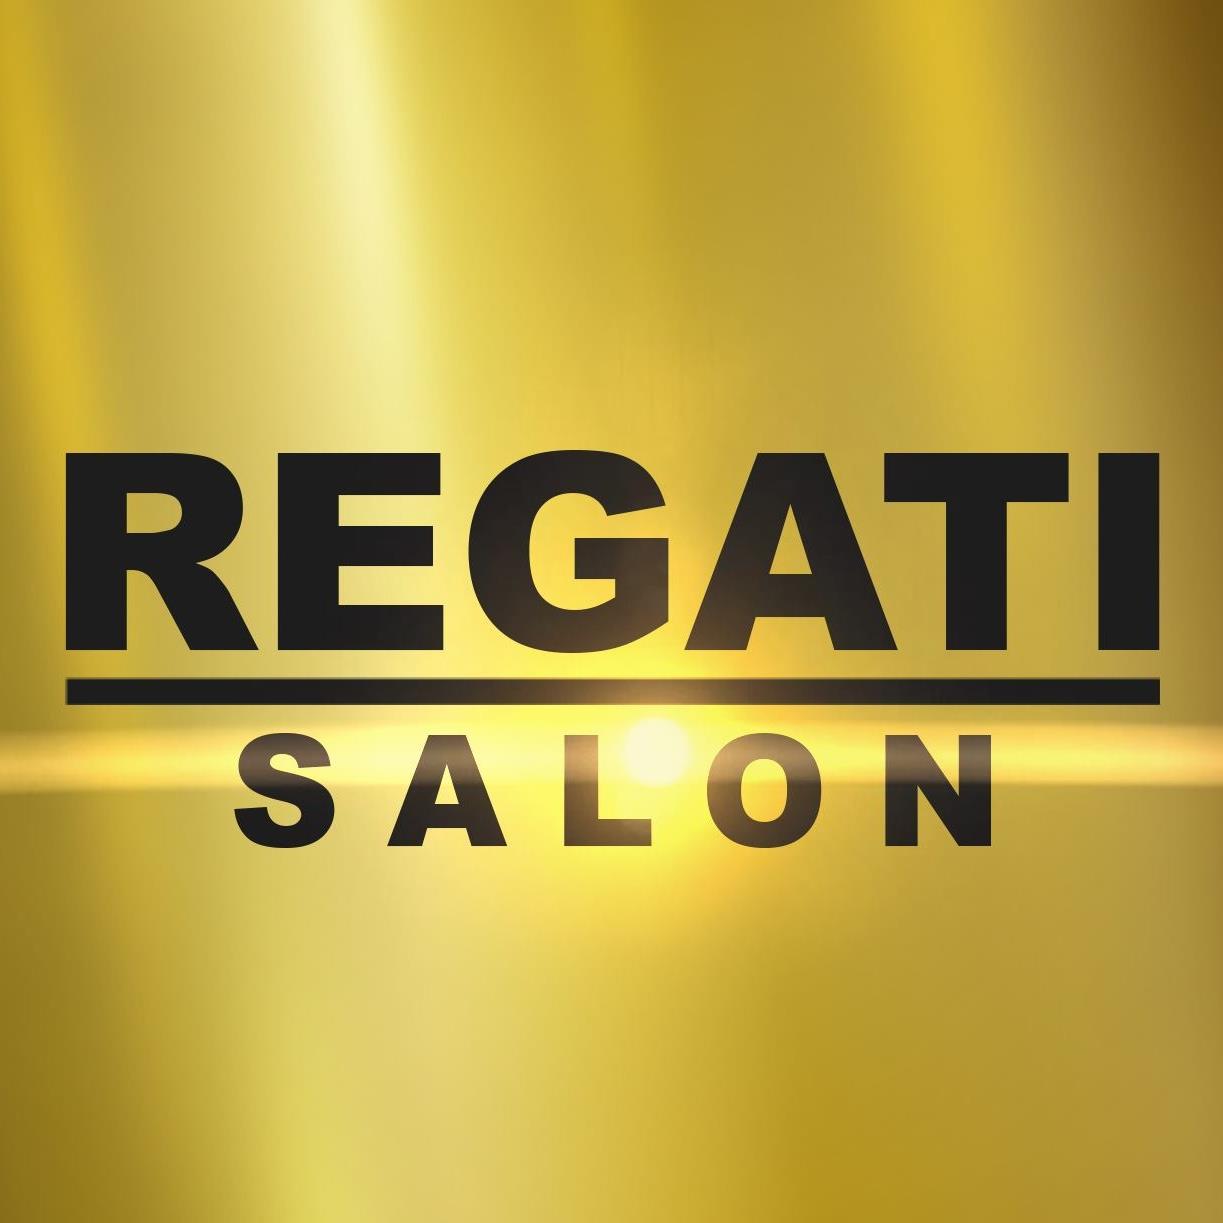 Regati Salon 1 PROFILE